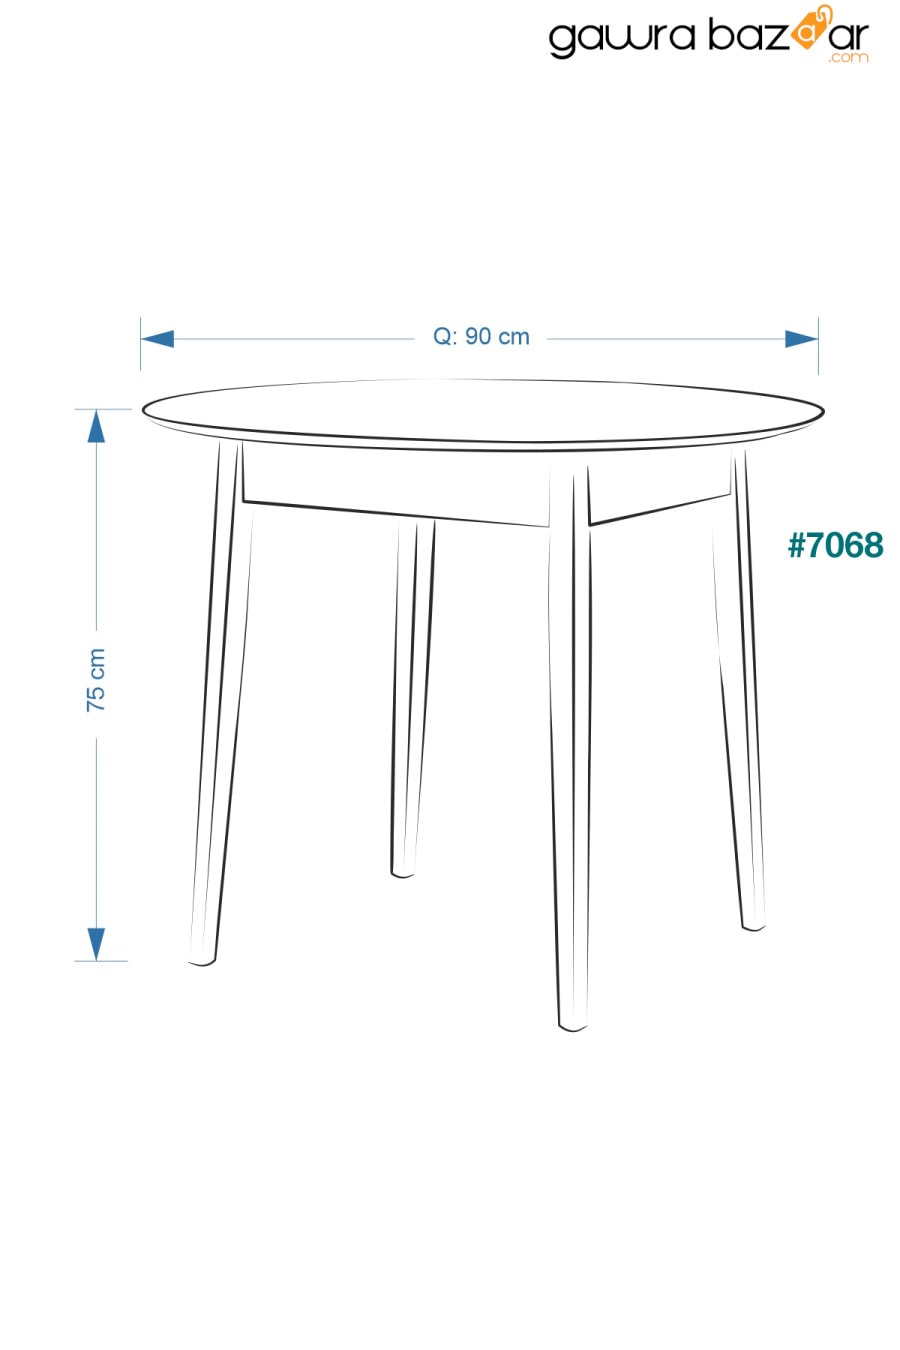 طاولة مطبخ مستديرة بيضاء طبيعية من افانوس - Q90 سم VİLİNZE 3